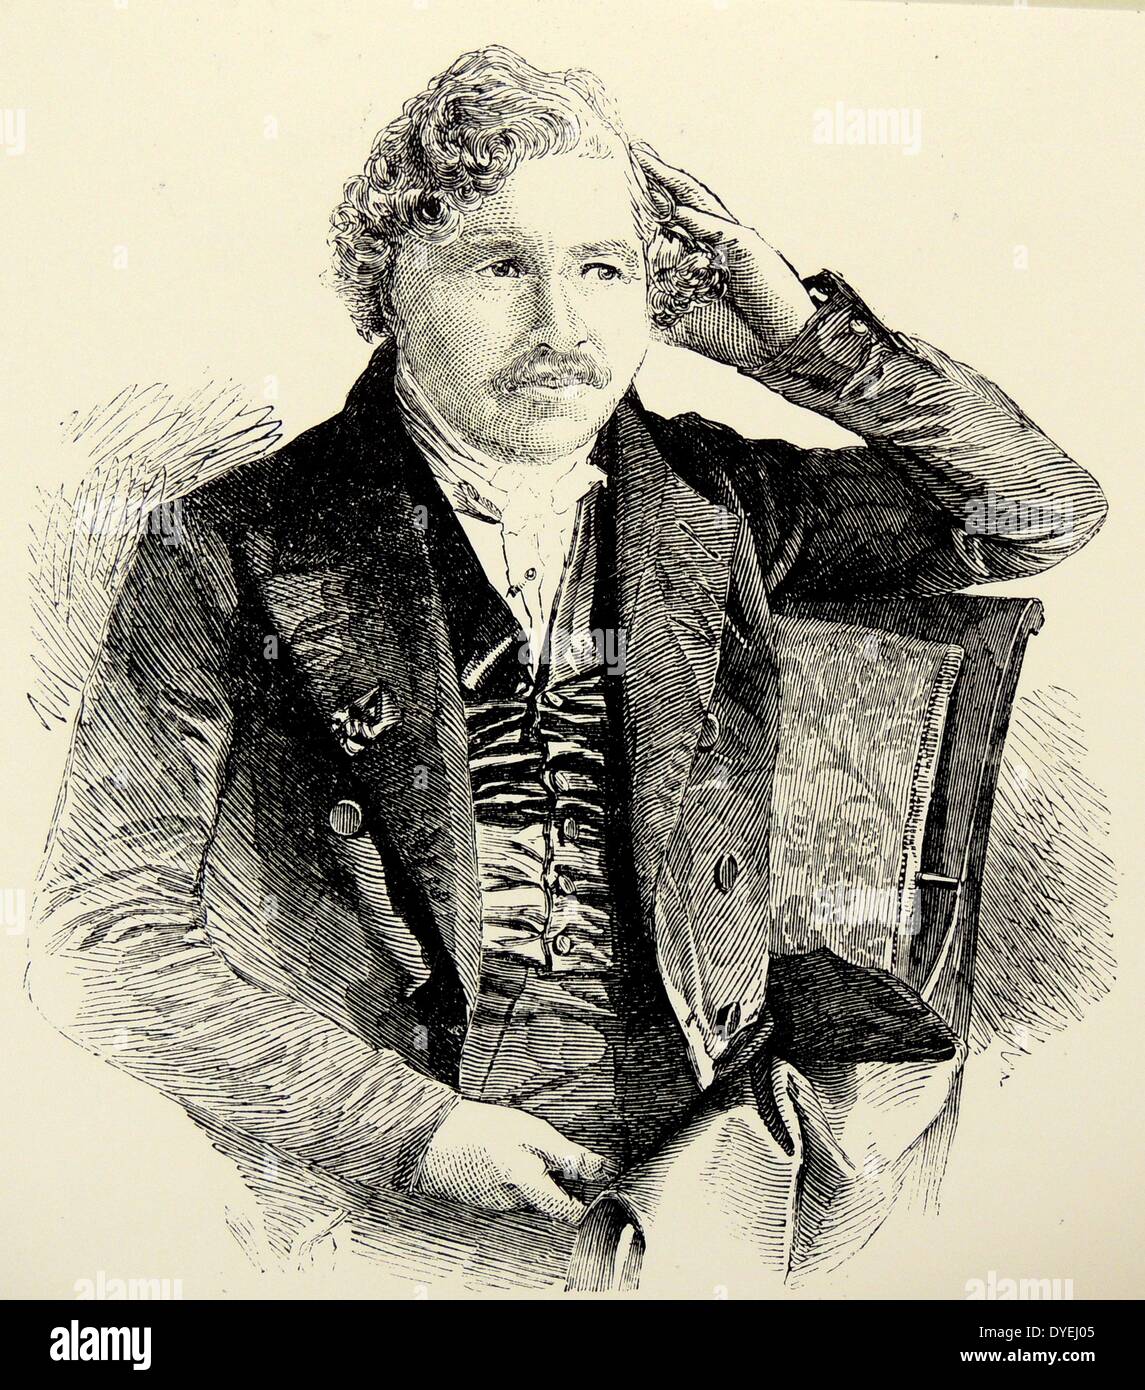 Louis Daguerre (1789-1851) französischer Pionier der Fotografie. Gravur, London, 1851. Stockfoto